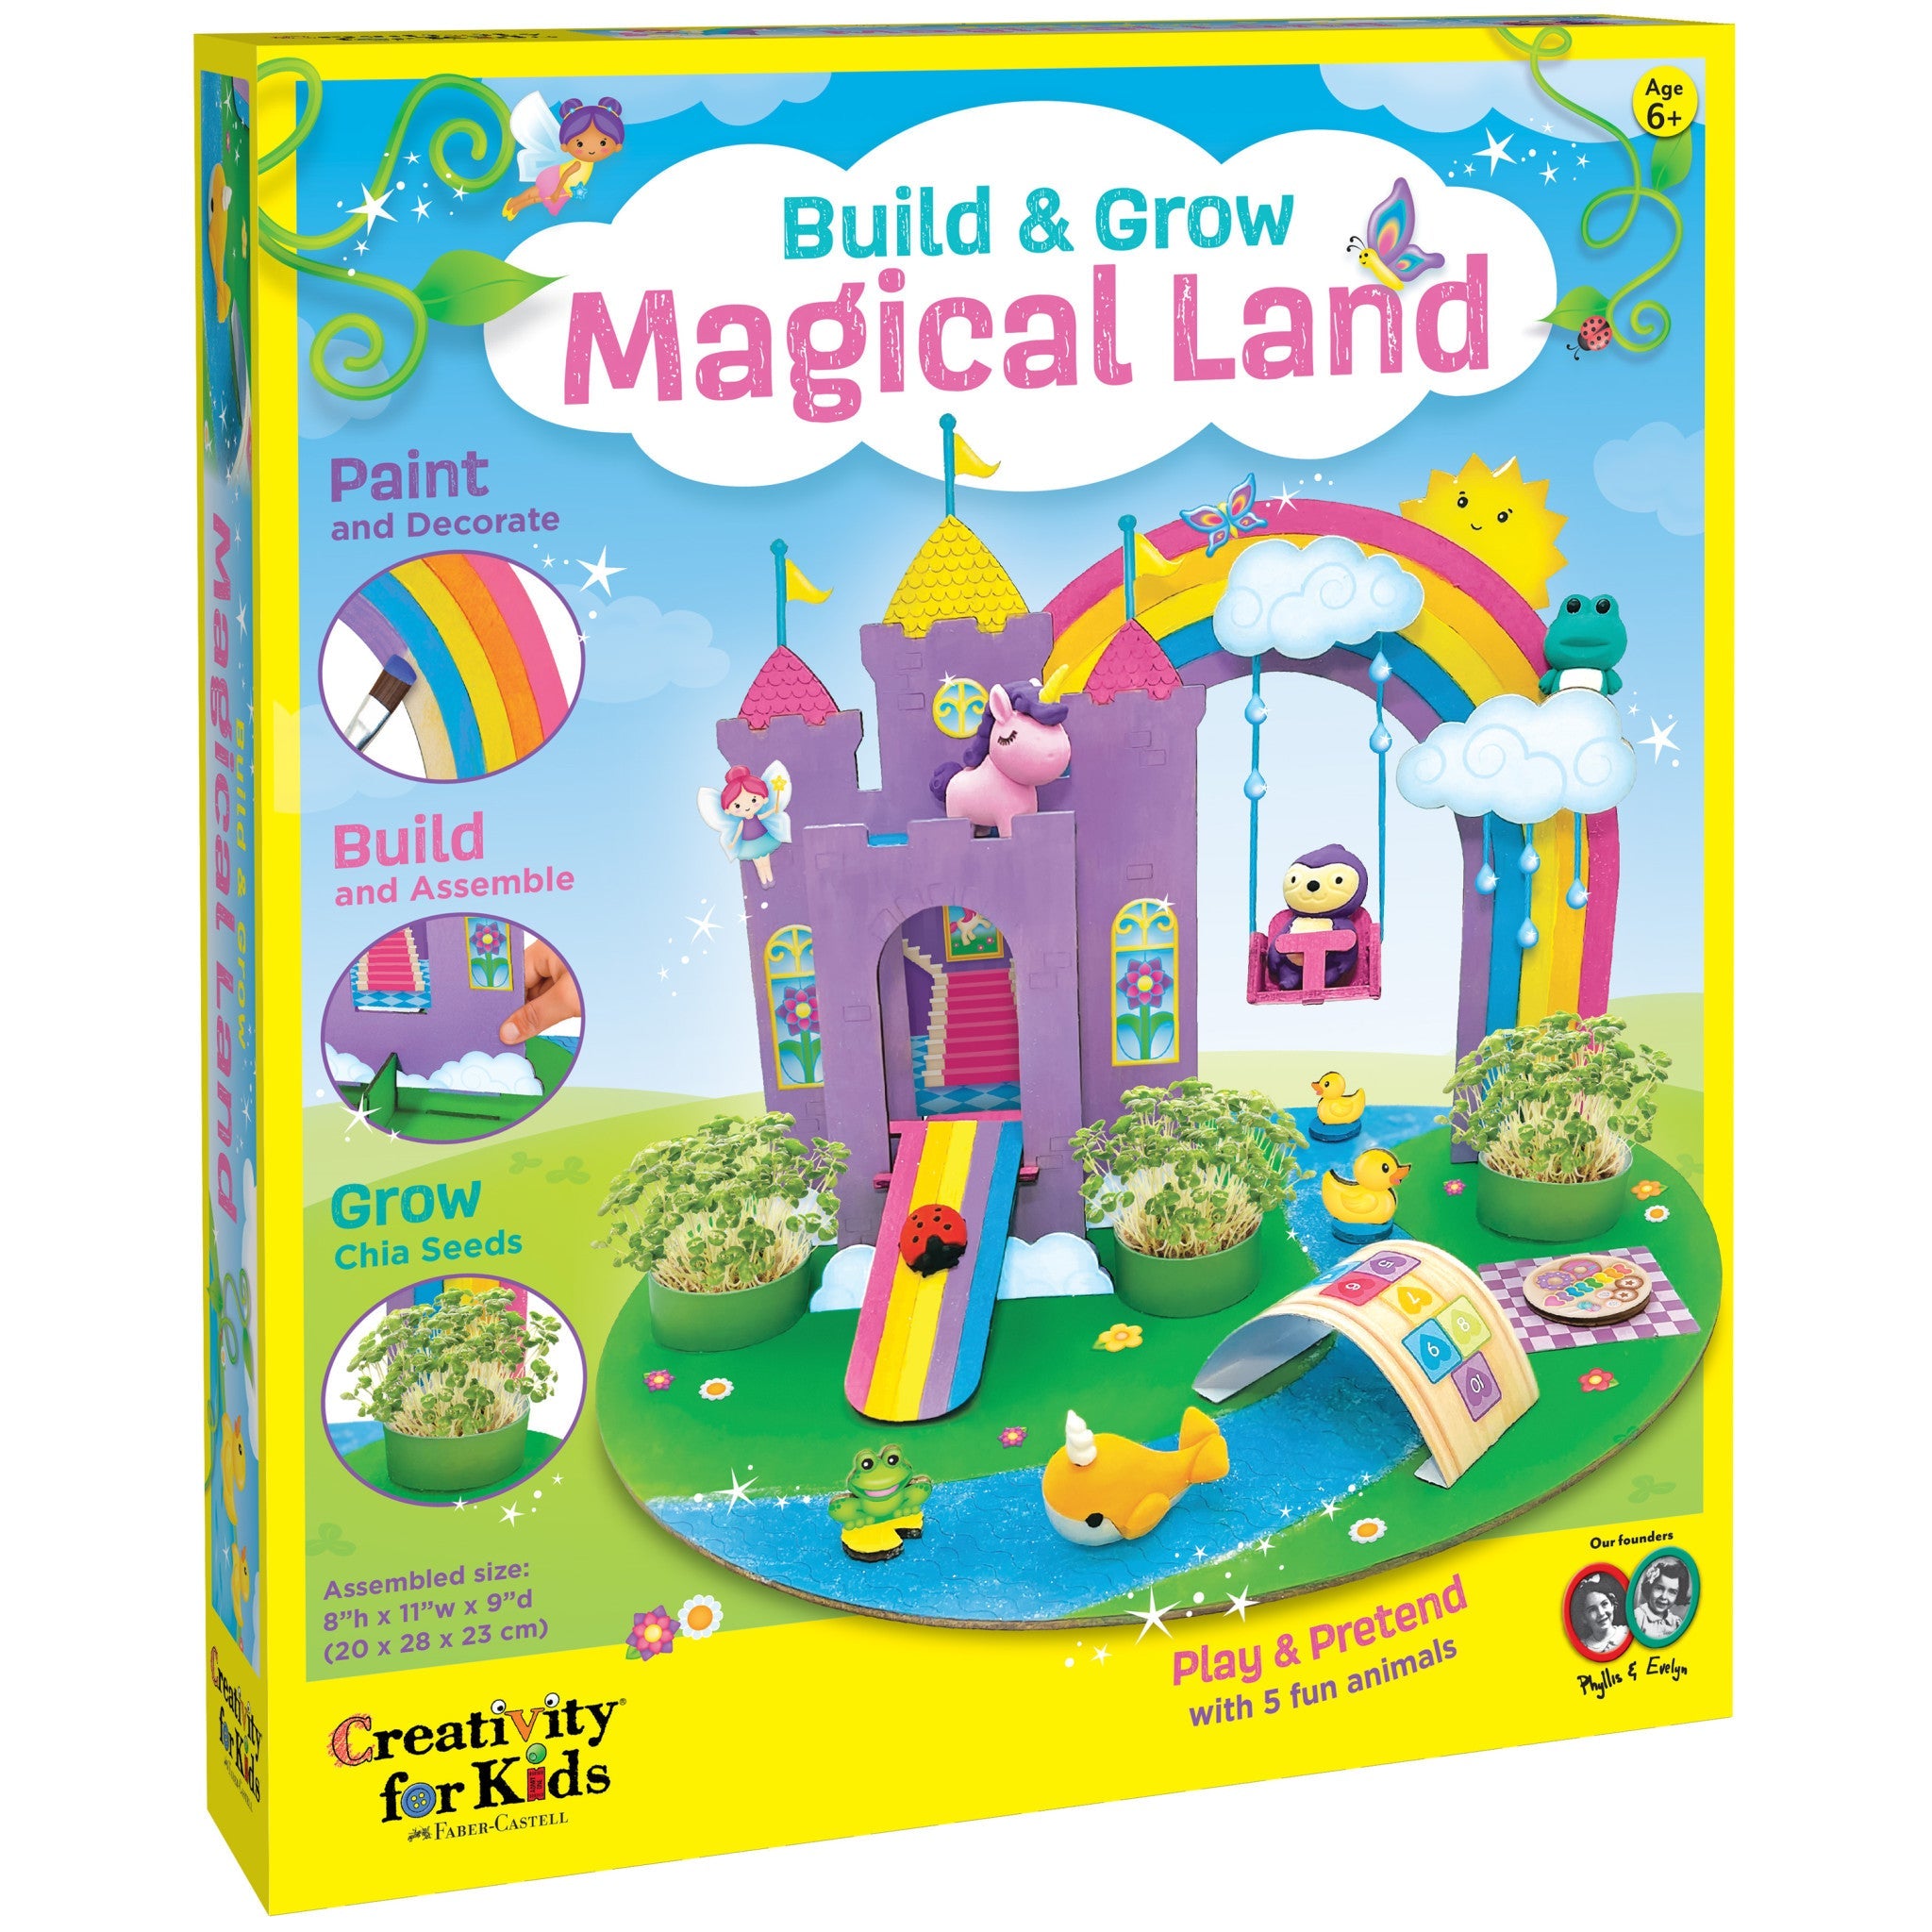 Magical Land Build & Grow